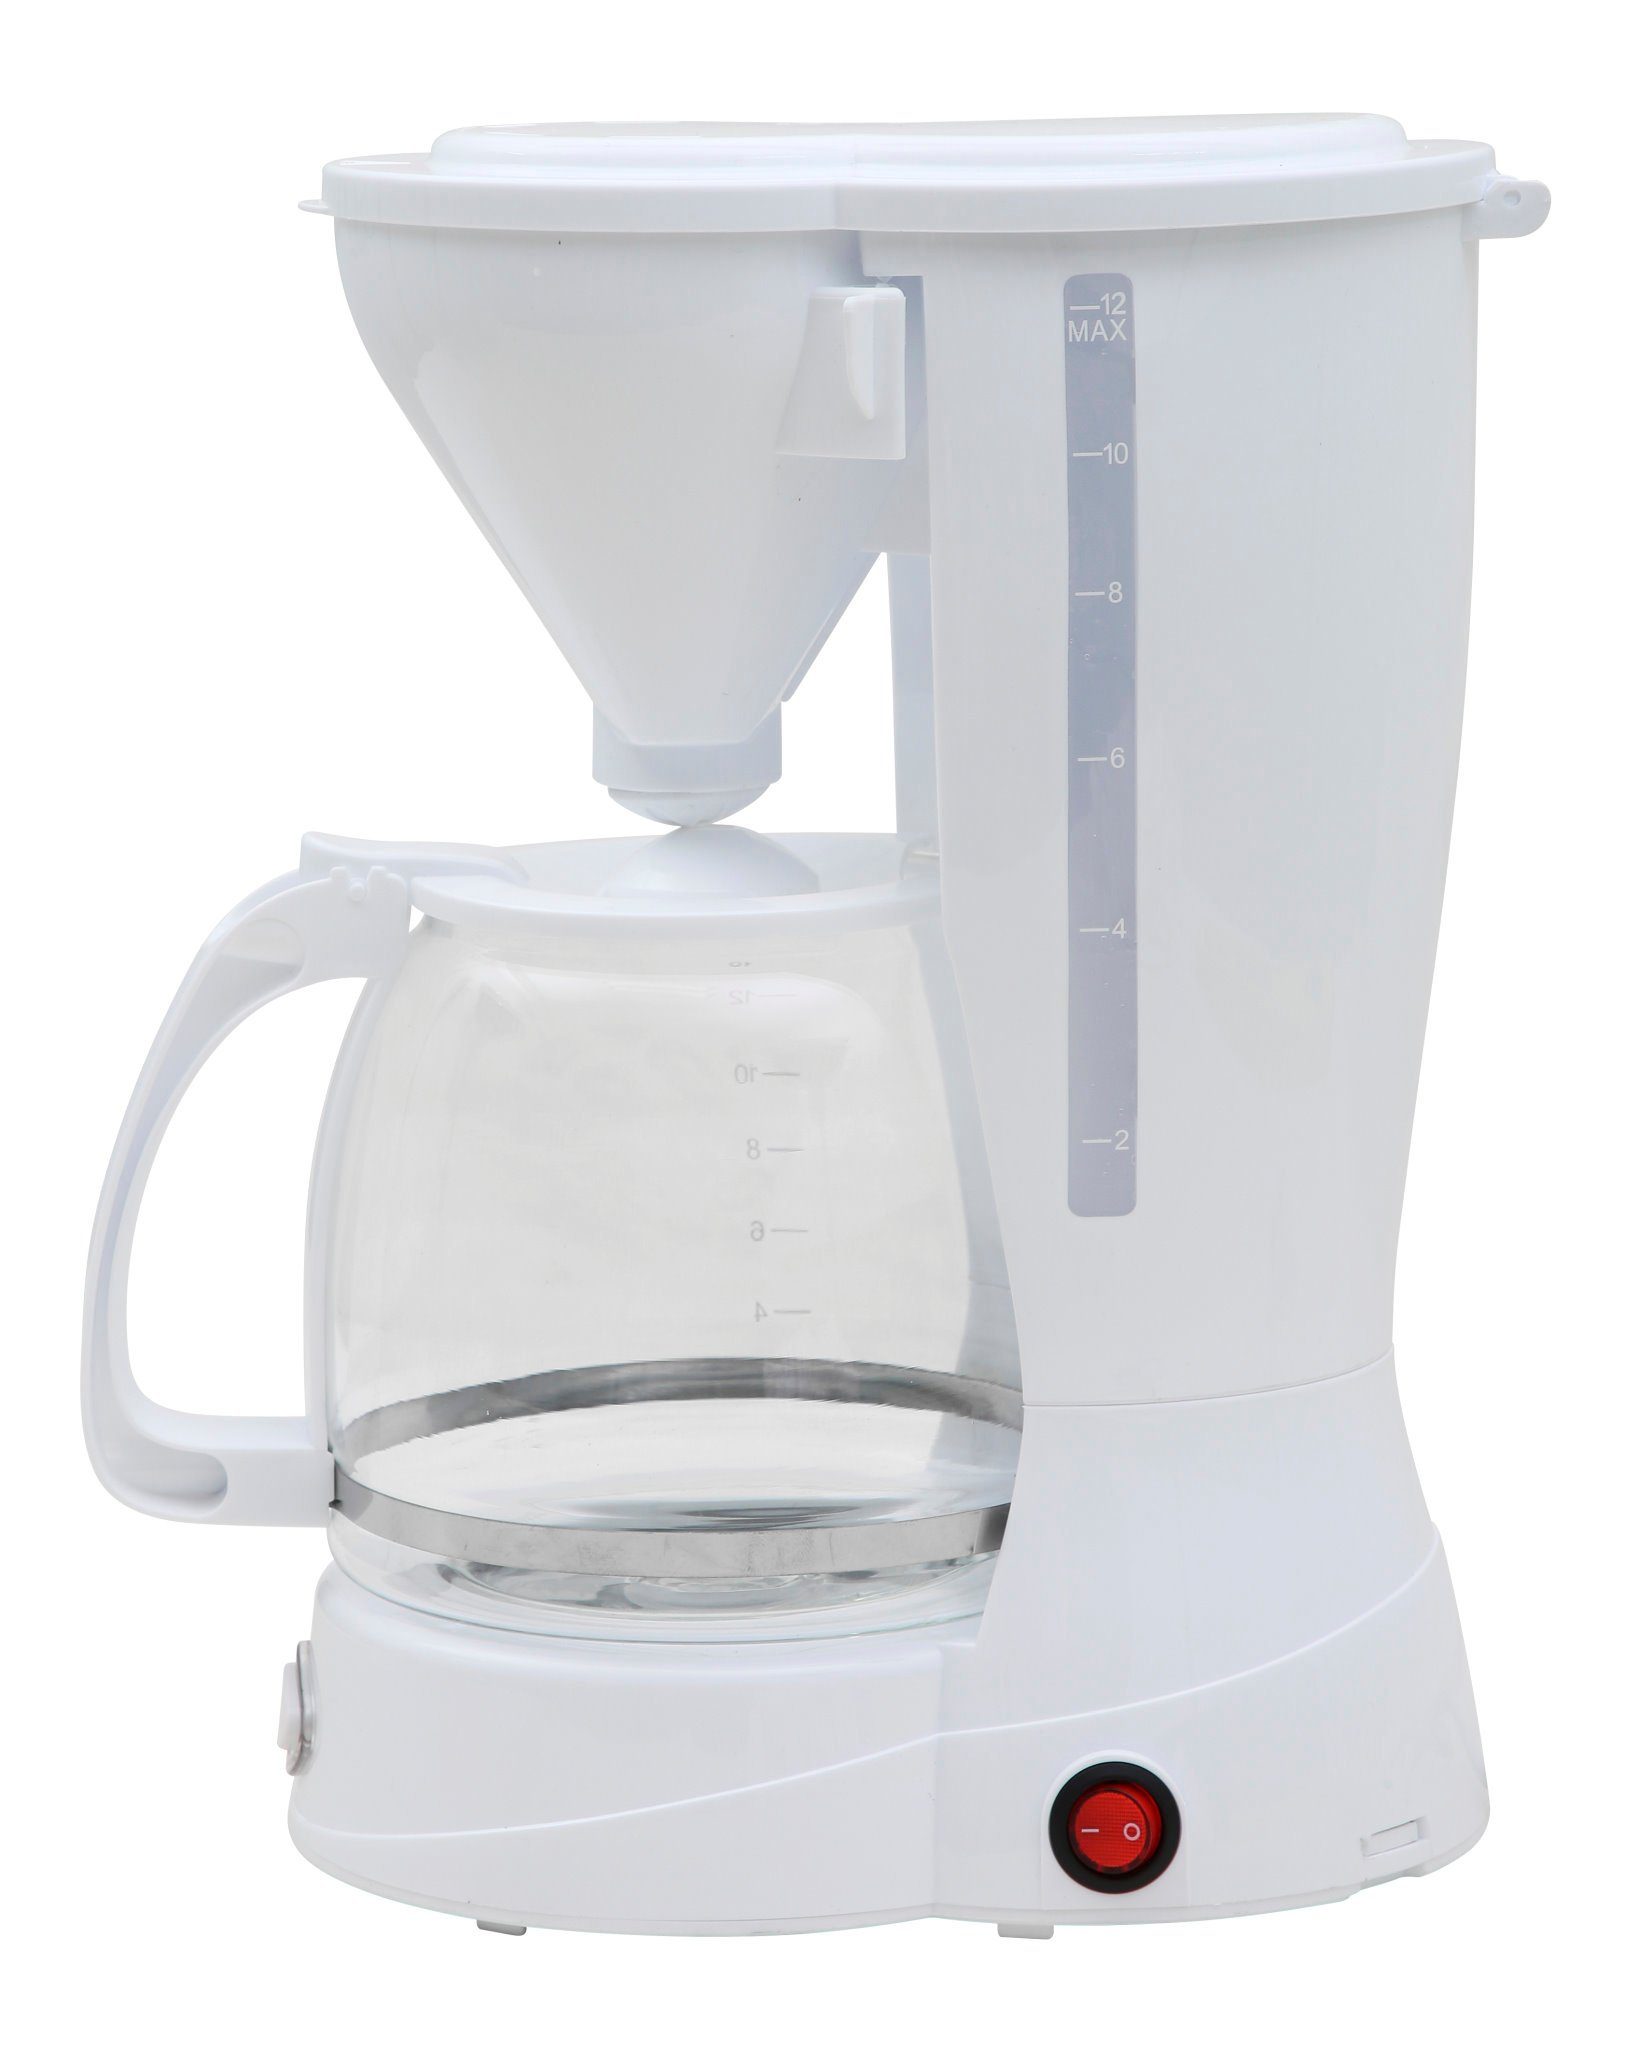 DESKI Filterkaffeemaschine, 1.5l Kaffeekanne, Dauerfilter oder Papierfilter  2, Kaffeemaschine 12 Tassen Filterkaffeemaschine Glas Kanne Kaffee Maschine  800W online kaufen | OTTO